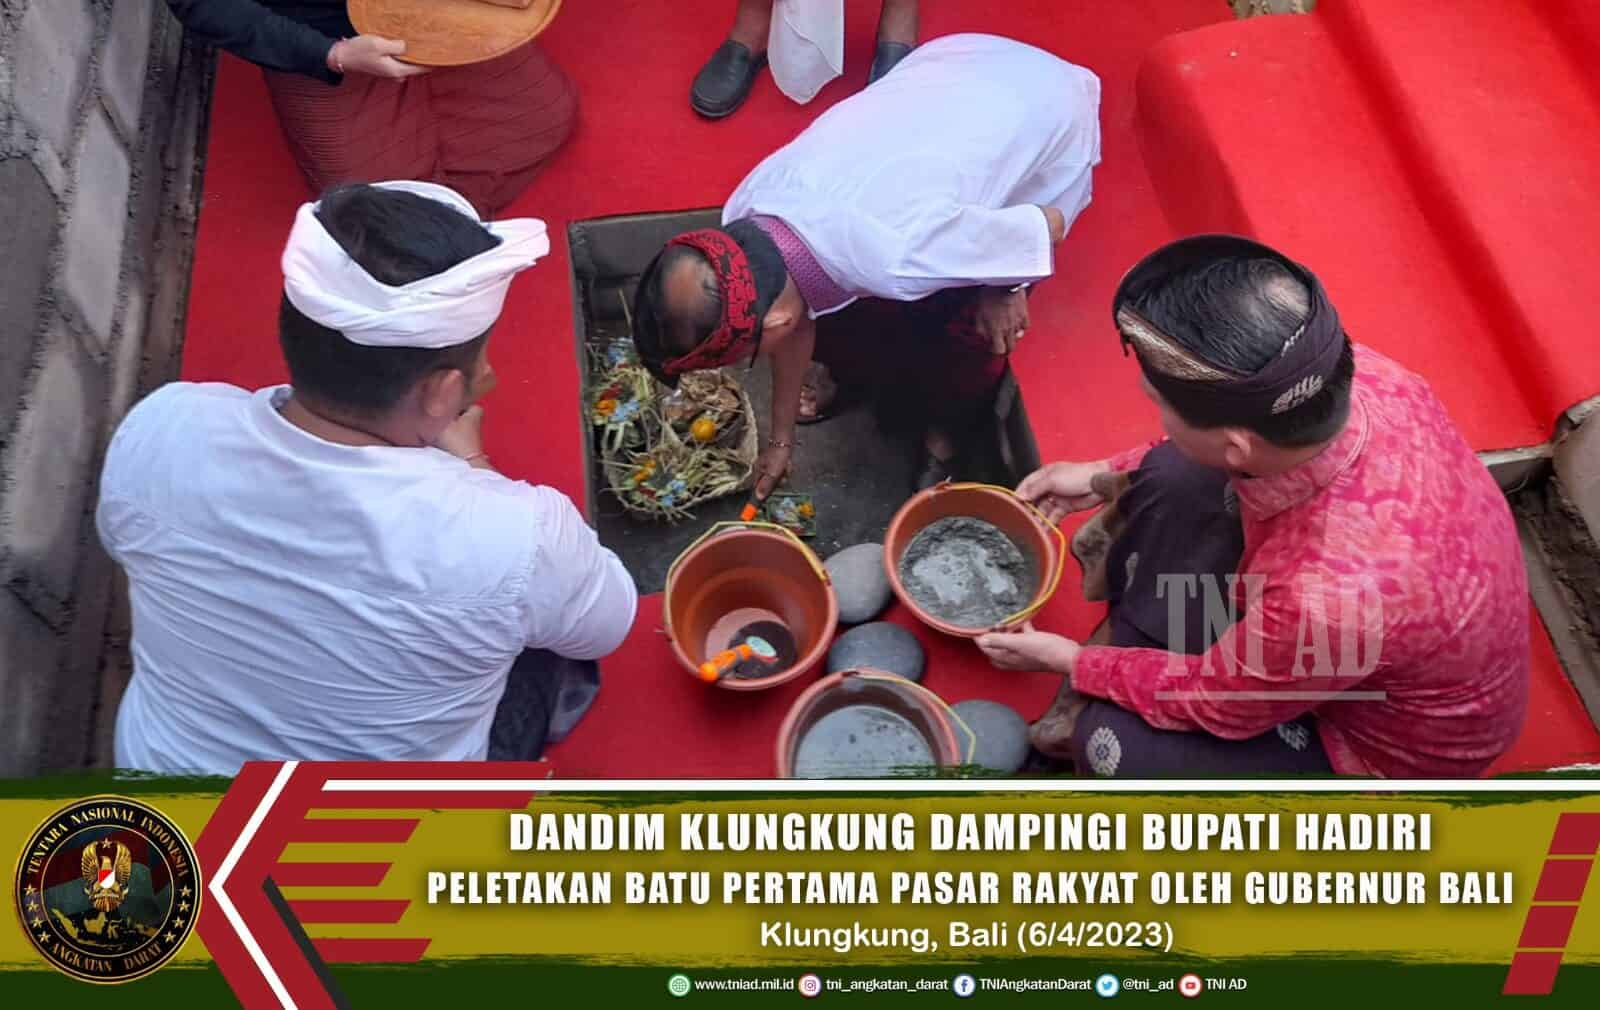 Dandim Klungkung Dampingi Bupati Hadiri Peletakan Batu Pertama Pasar Rakyat oleh Gubernur Bali